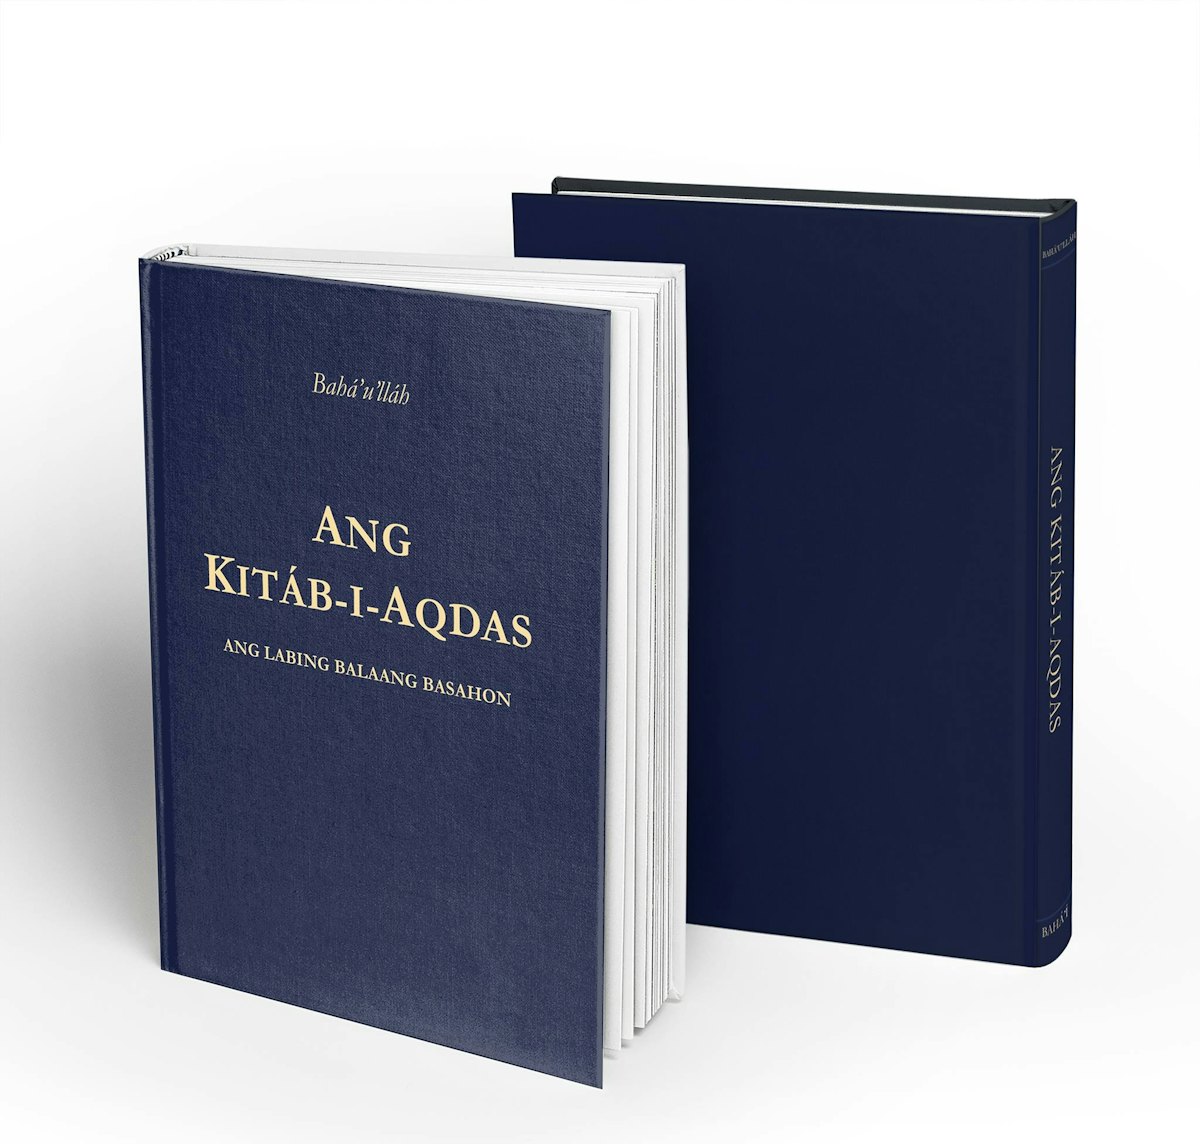 Le Kitab-i-Aqdas, le Livre le plus saint de la foi bahá’íe, a été traduit en cebuano, langue parlée par environ 20 millions de personnes dans le centre des Philippines.